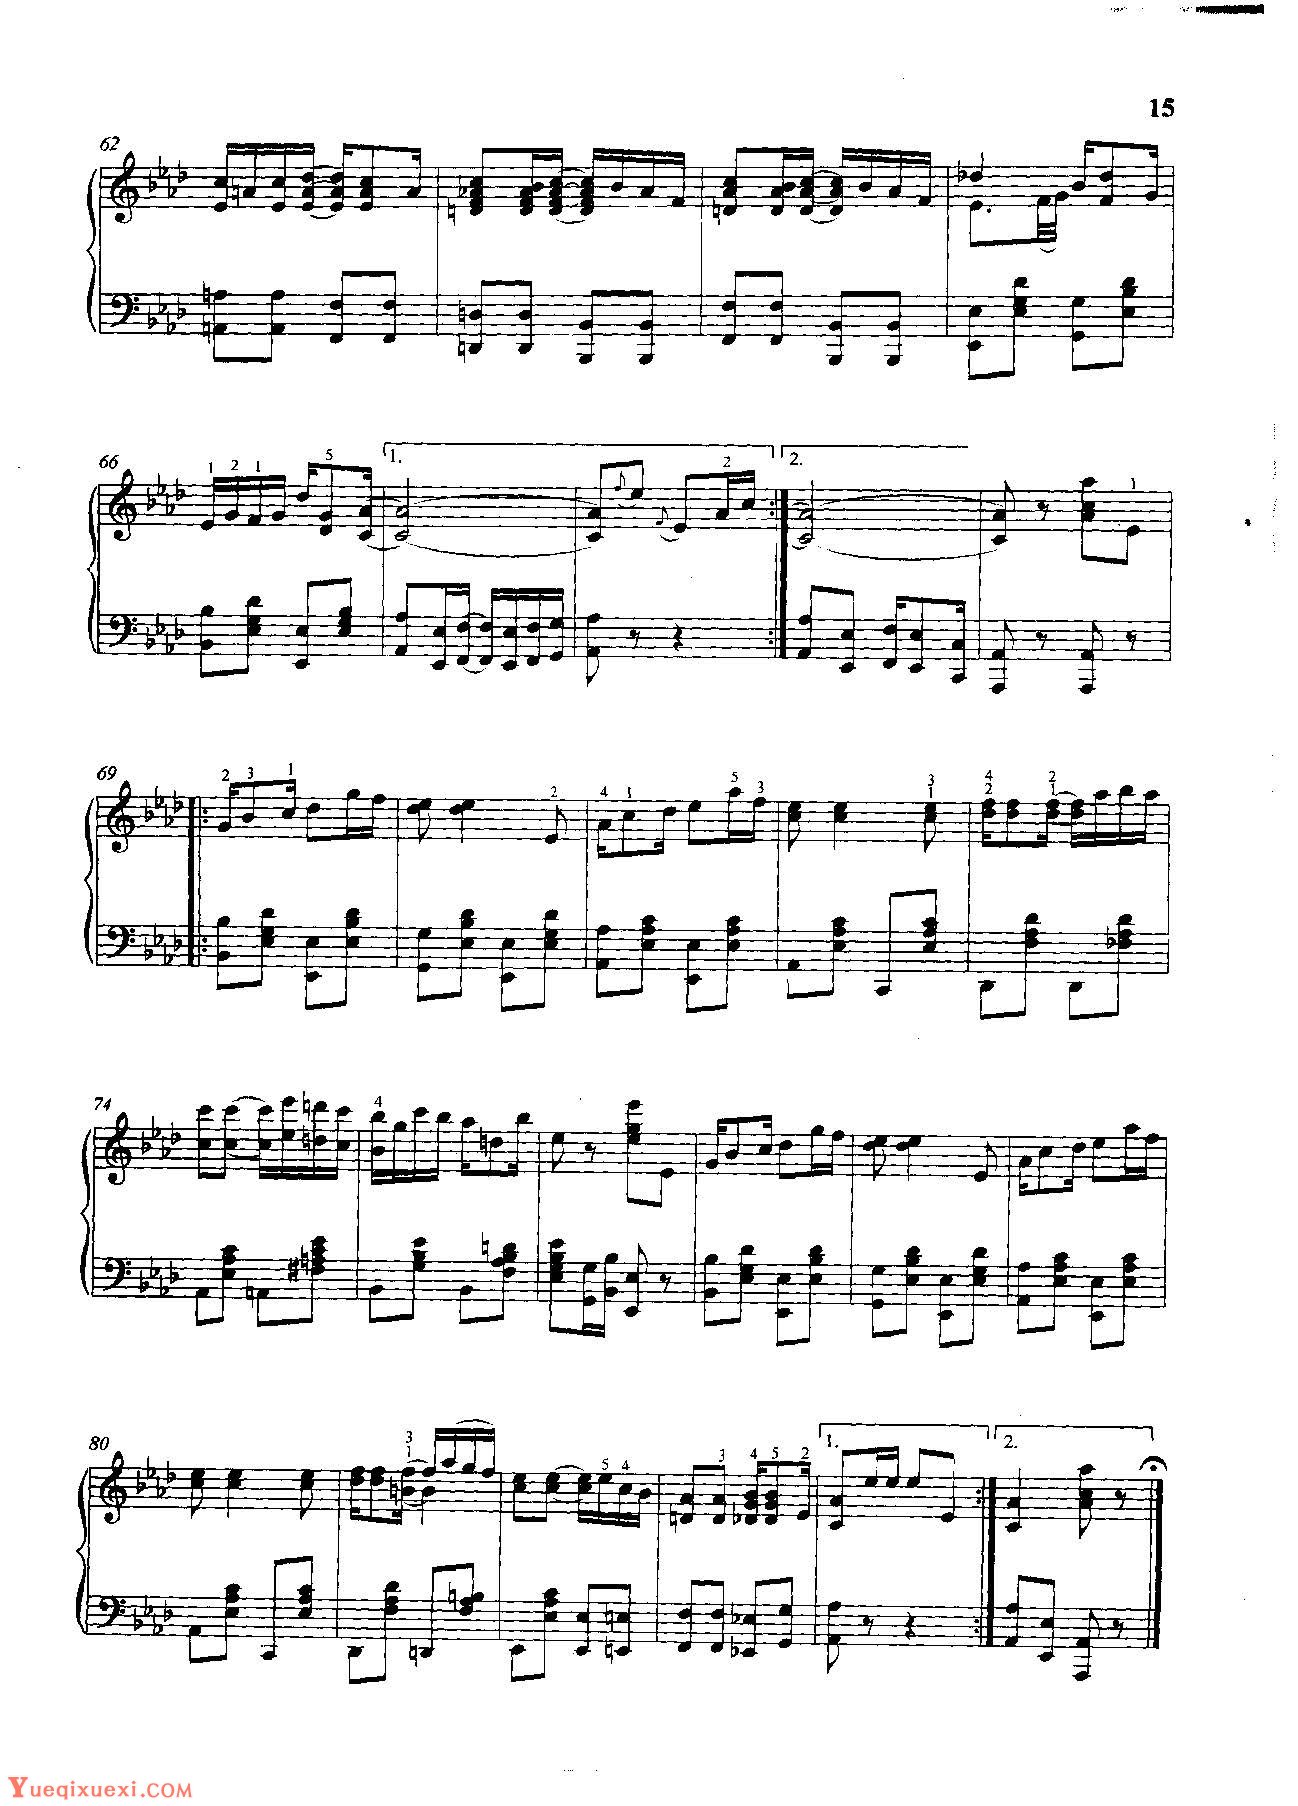 雷格泰姆钢琴乐谱《漂亮姑娘雷格》雷格泰姆之王斯科特·乔普林